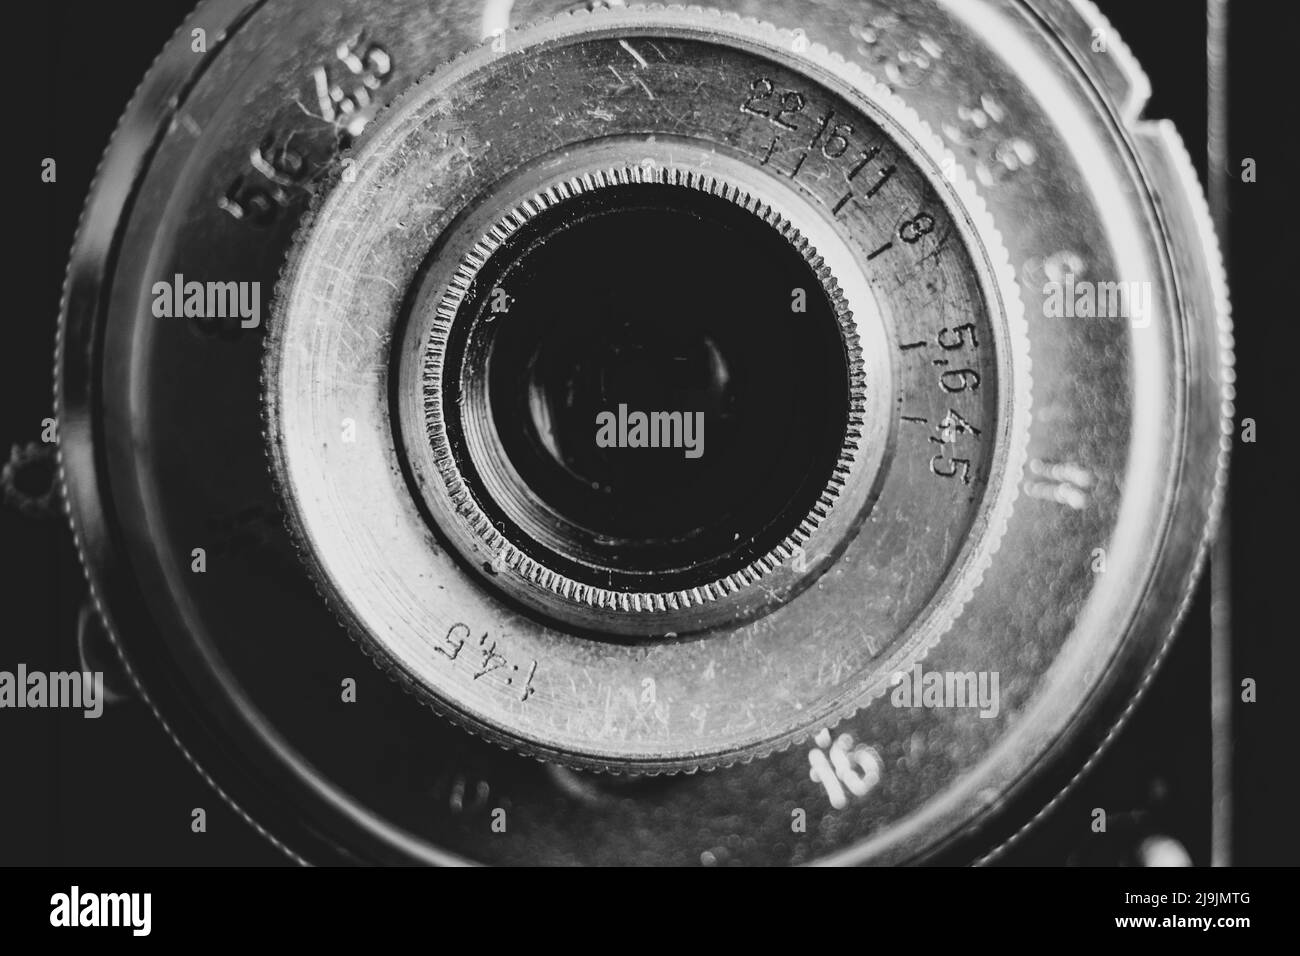 Retro film camera and lens close-up, technology, camera lens Stock Photo